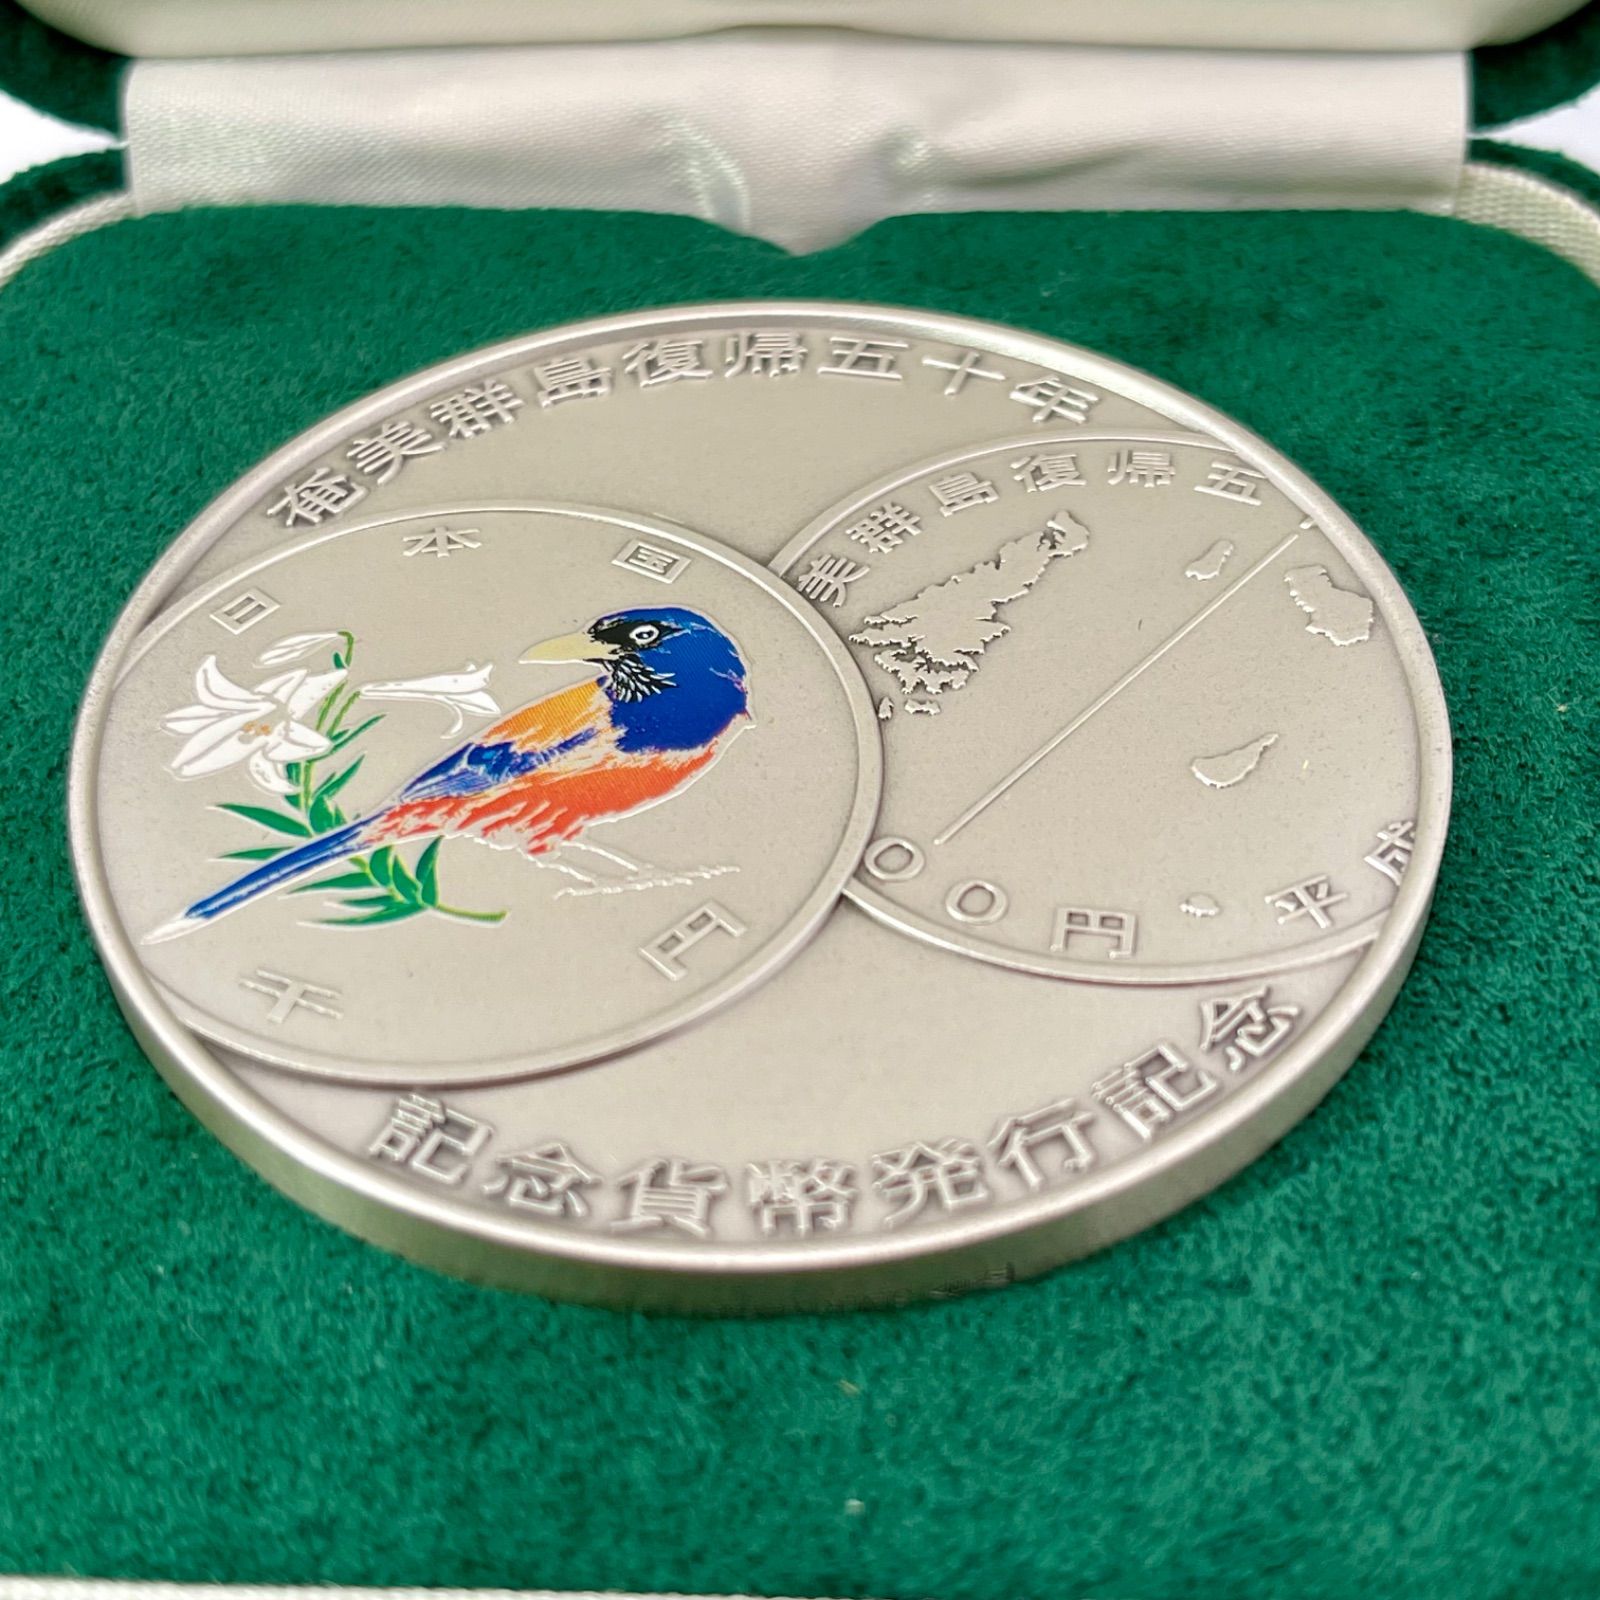 奄美群島復帰五十周年記念貨幣 発行記念メダル 純銀 メダル 銀メダル Japan Mint 造幣局製 カラー銀メダル 銀メダル